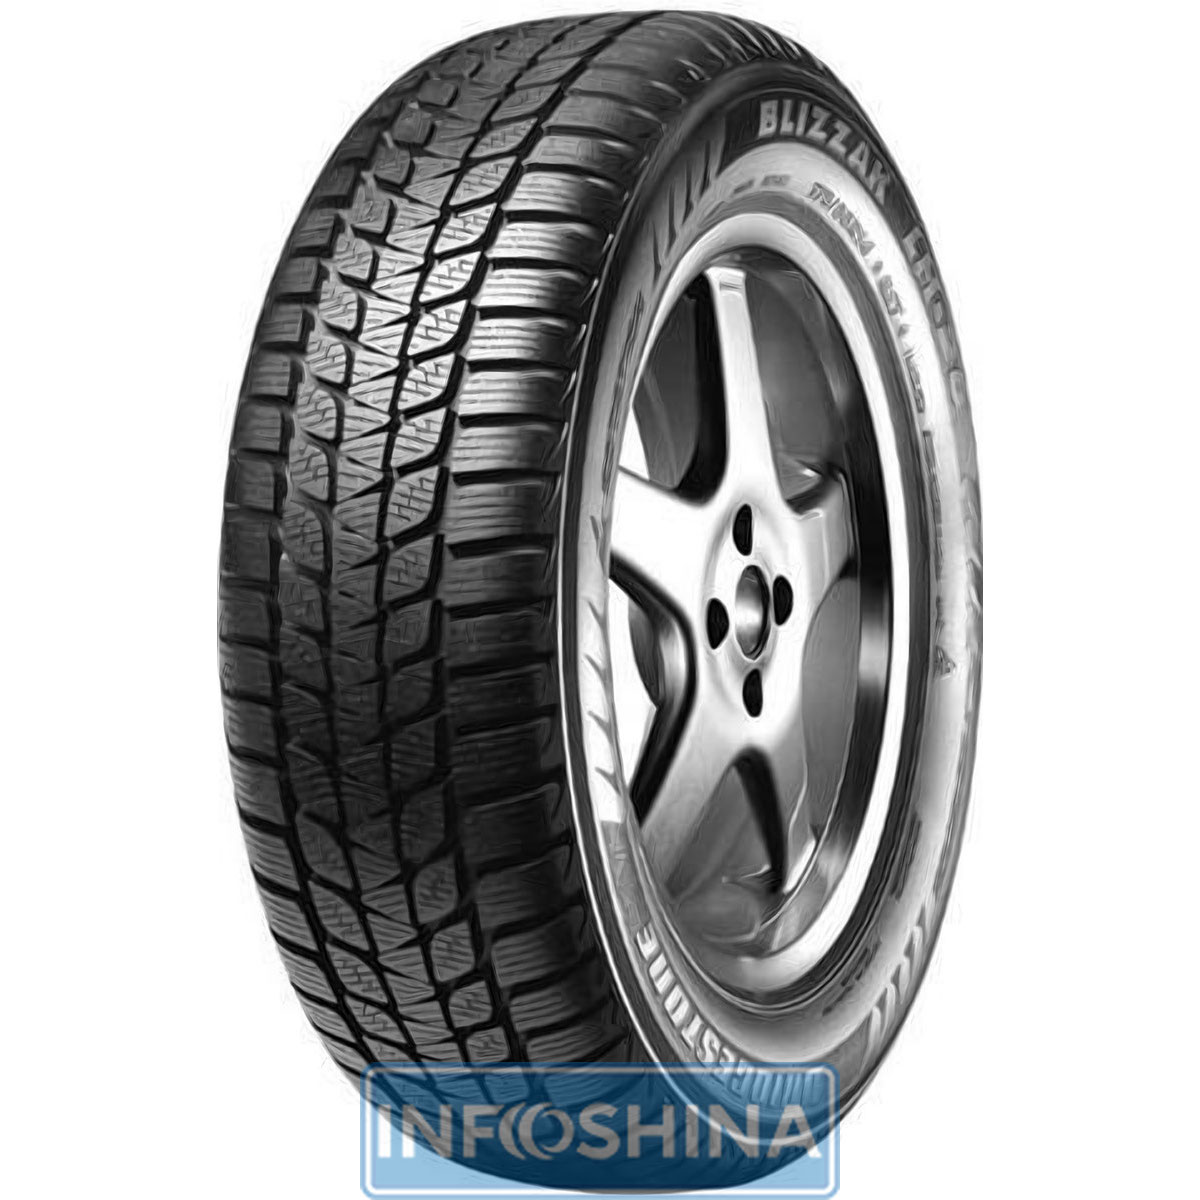 Купить шины Bridgestone Blizzak LM-20 195/70 R14 91T